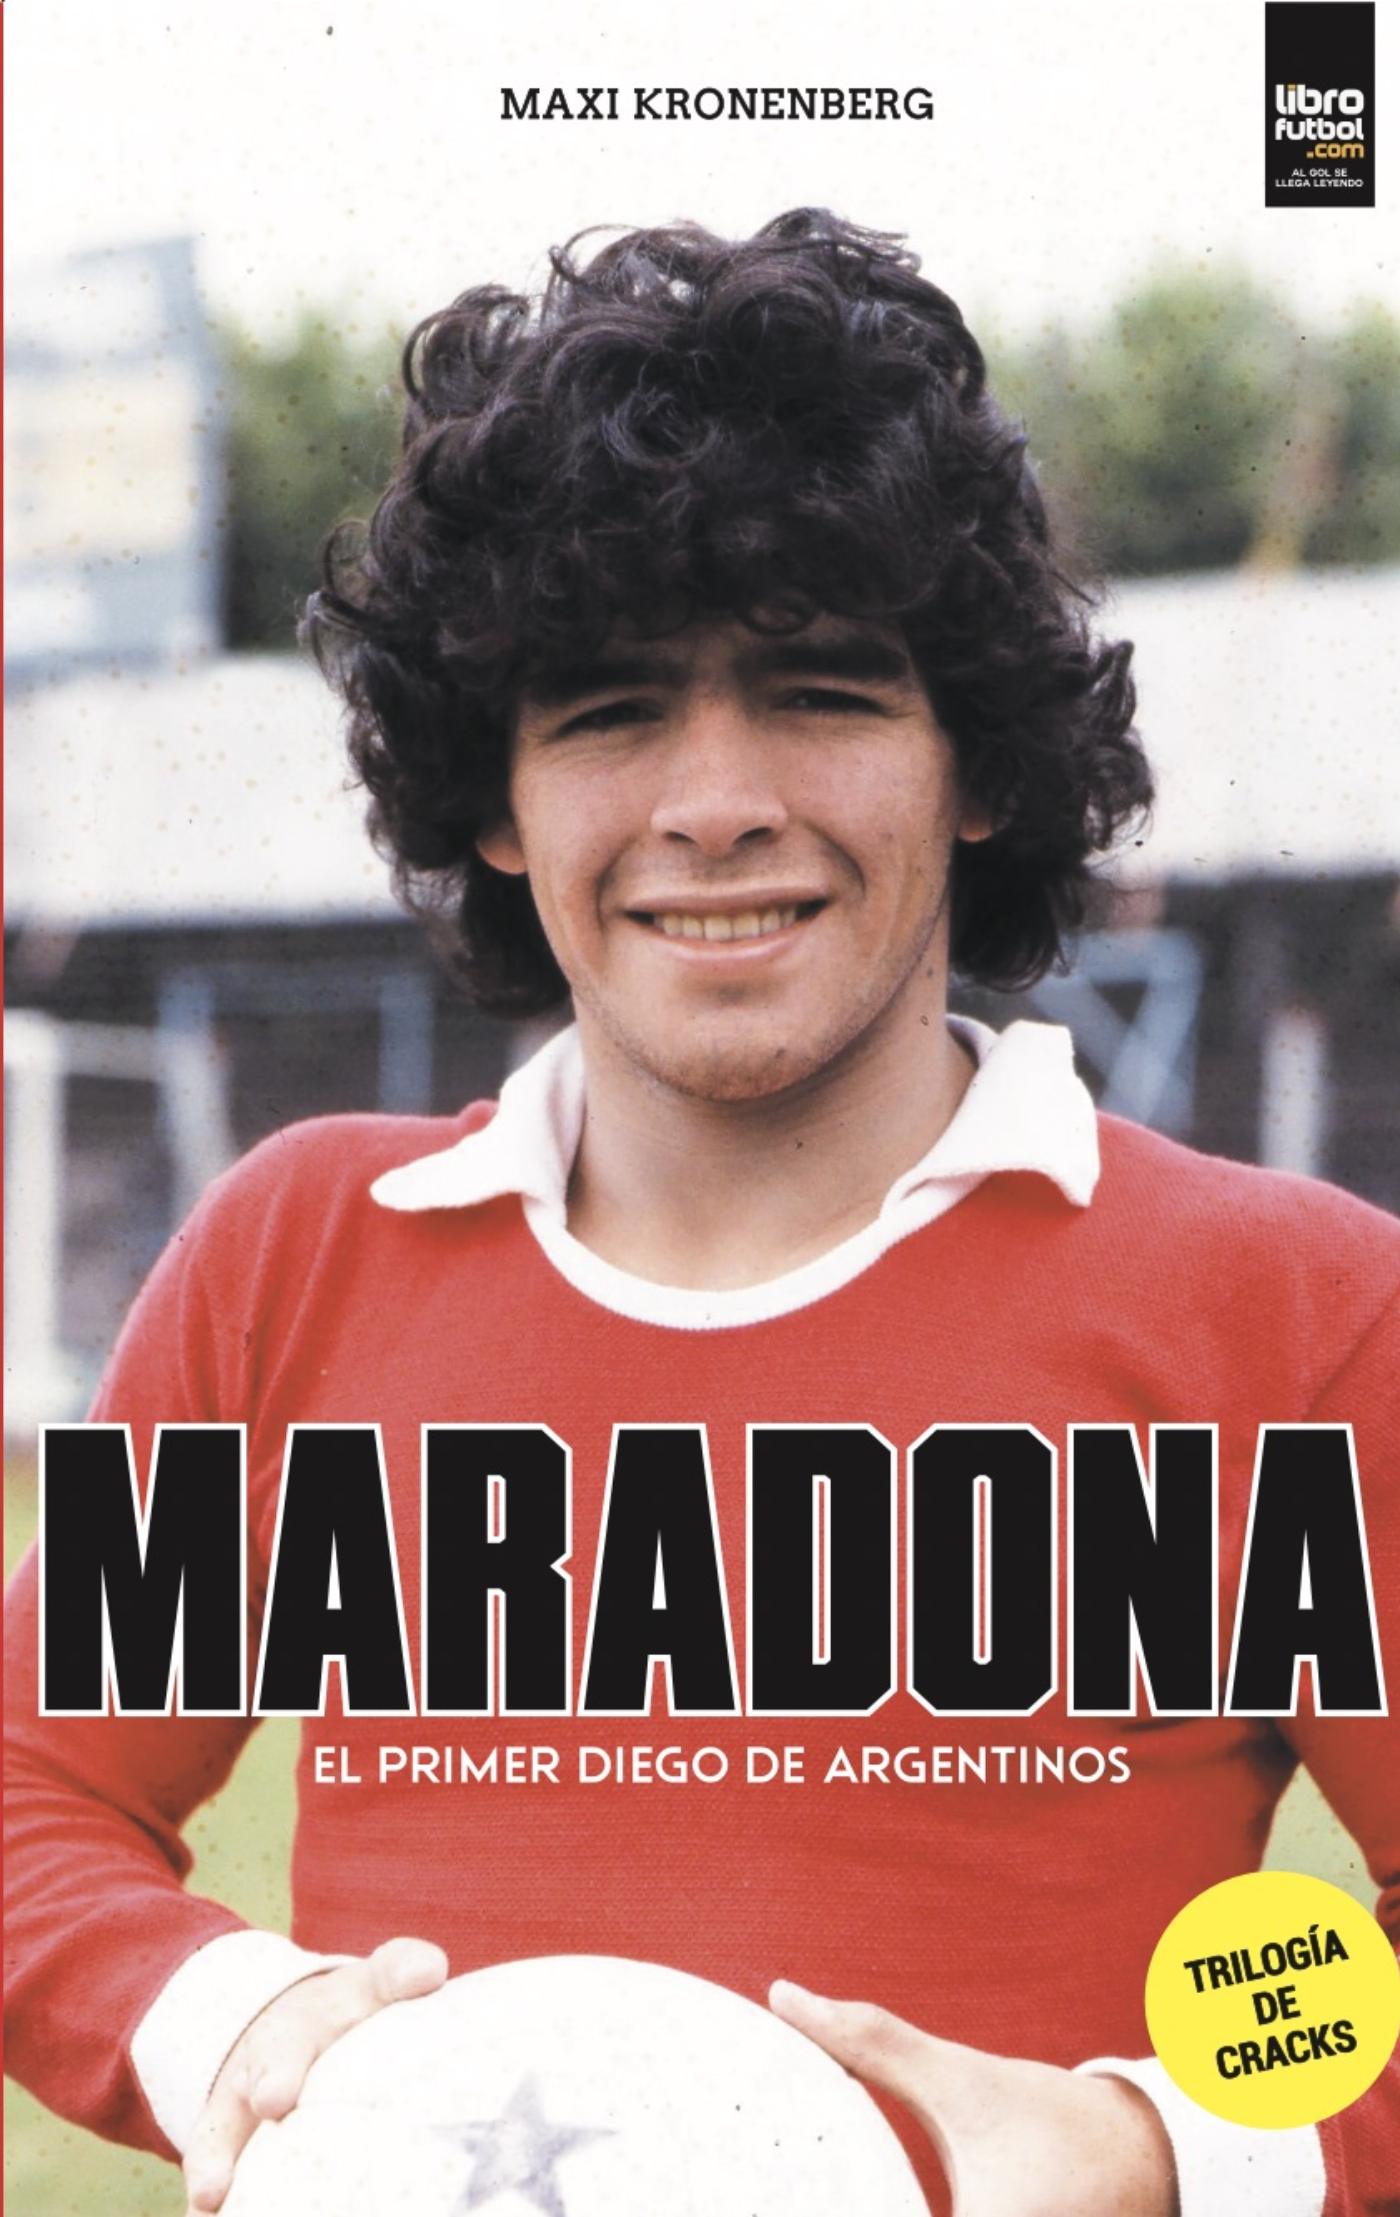 Maradona El primer Diego de Argentinos